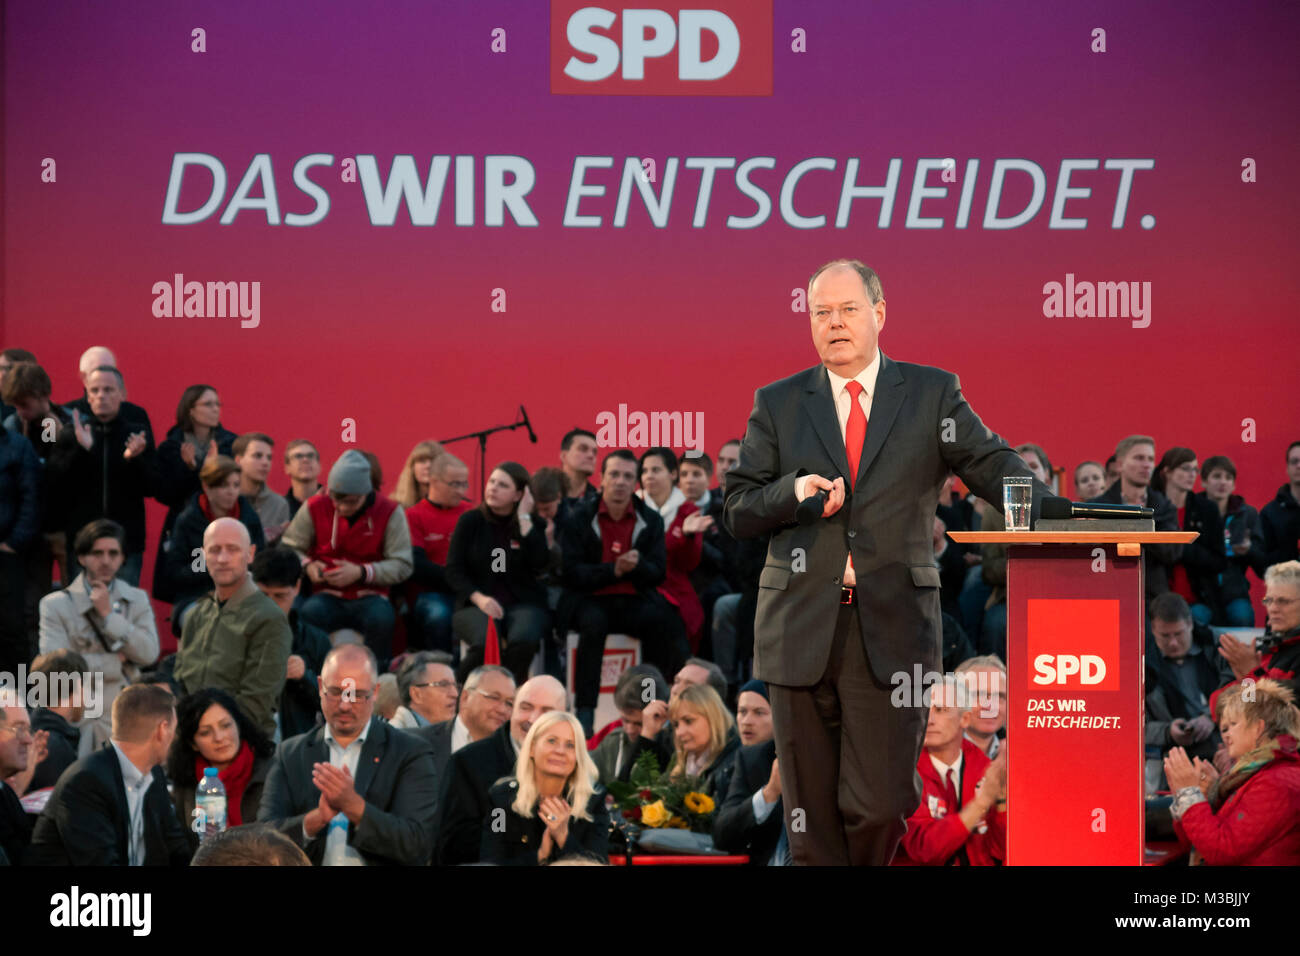 Peer Steinbrück beim Wahlkampf der SPD Kundgebung zur Bundestagswahl 2013 'Endspurt mit Peer Steinbrück' auf dem Berliner Alexanderplatz. Foto de stock